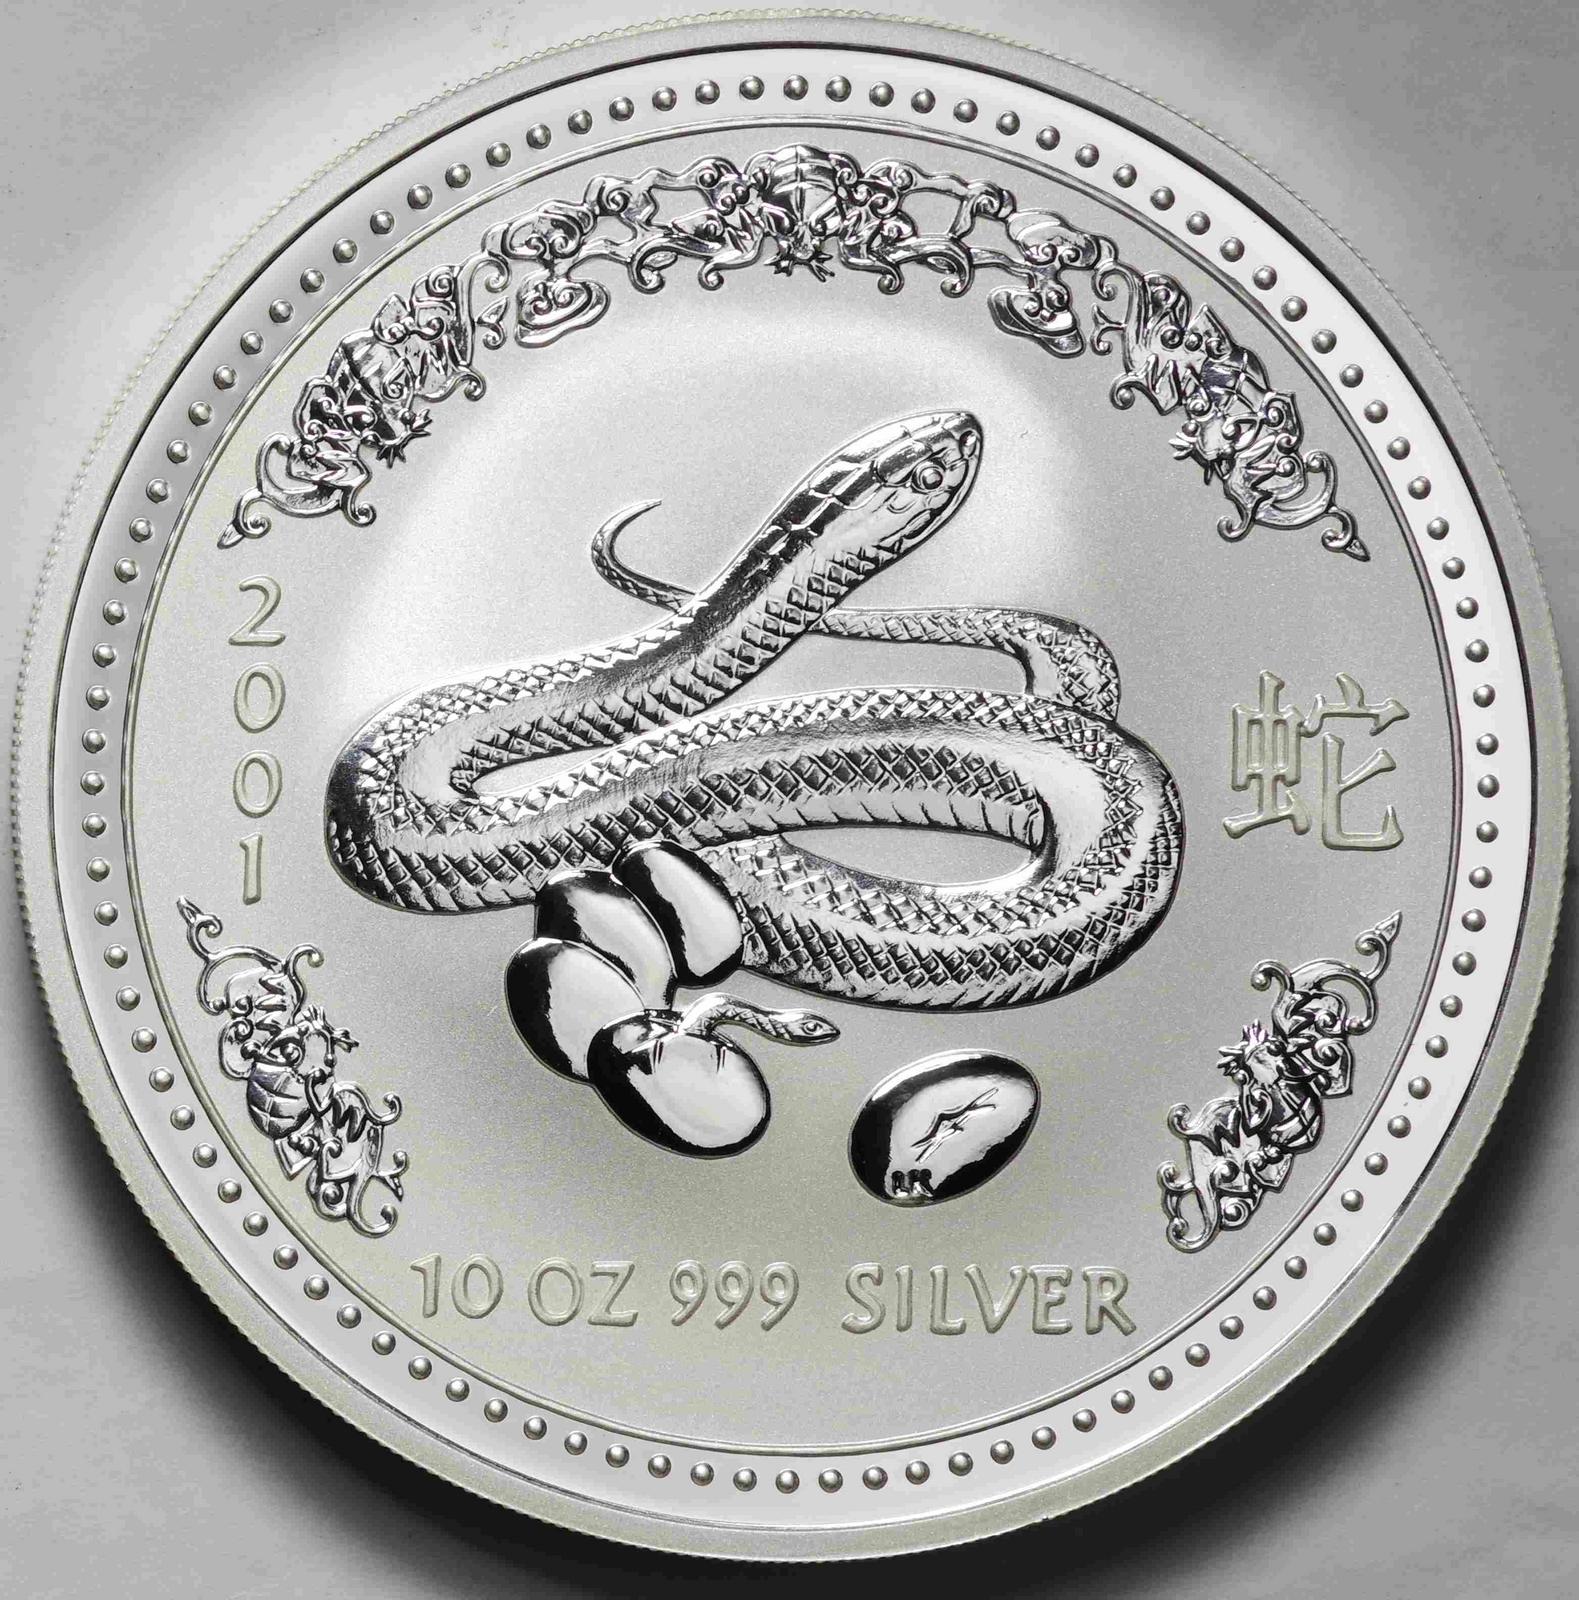 オーストラリア 銀貨 シルバーコイン 純銀 10oz コアラ - 旧貨幣/金貨 